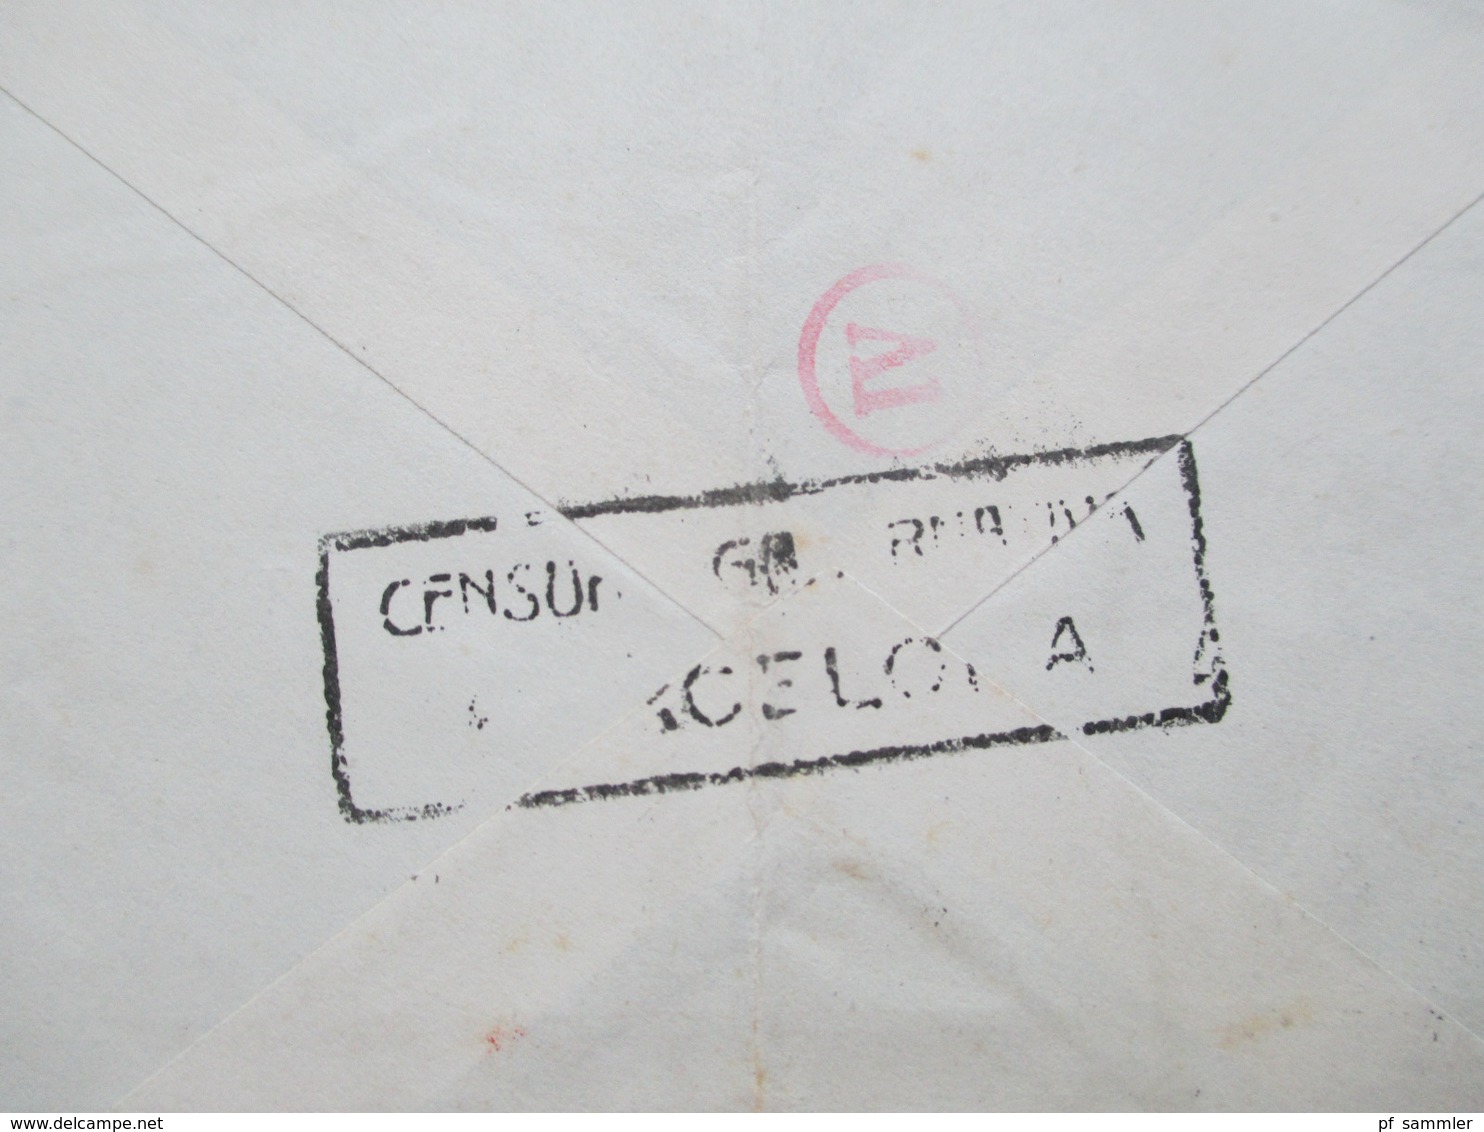 Spanien 1943 Luftpostbrief Barcelona - Berlin Mit Spanischer Zensur Und OKW Zensur Censura Barcelona Mehrfachzensur - Storia Postale